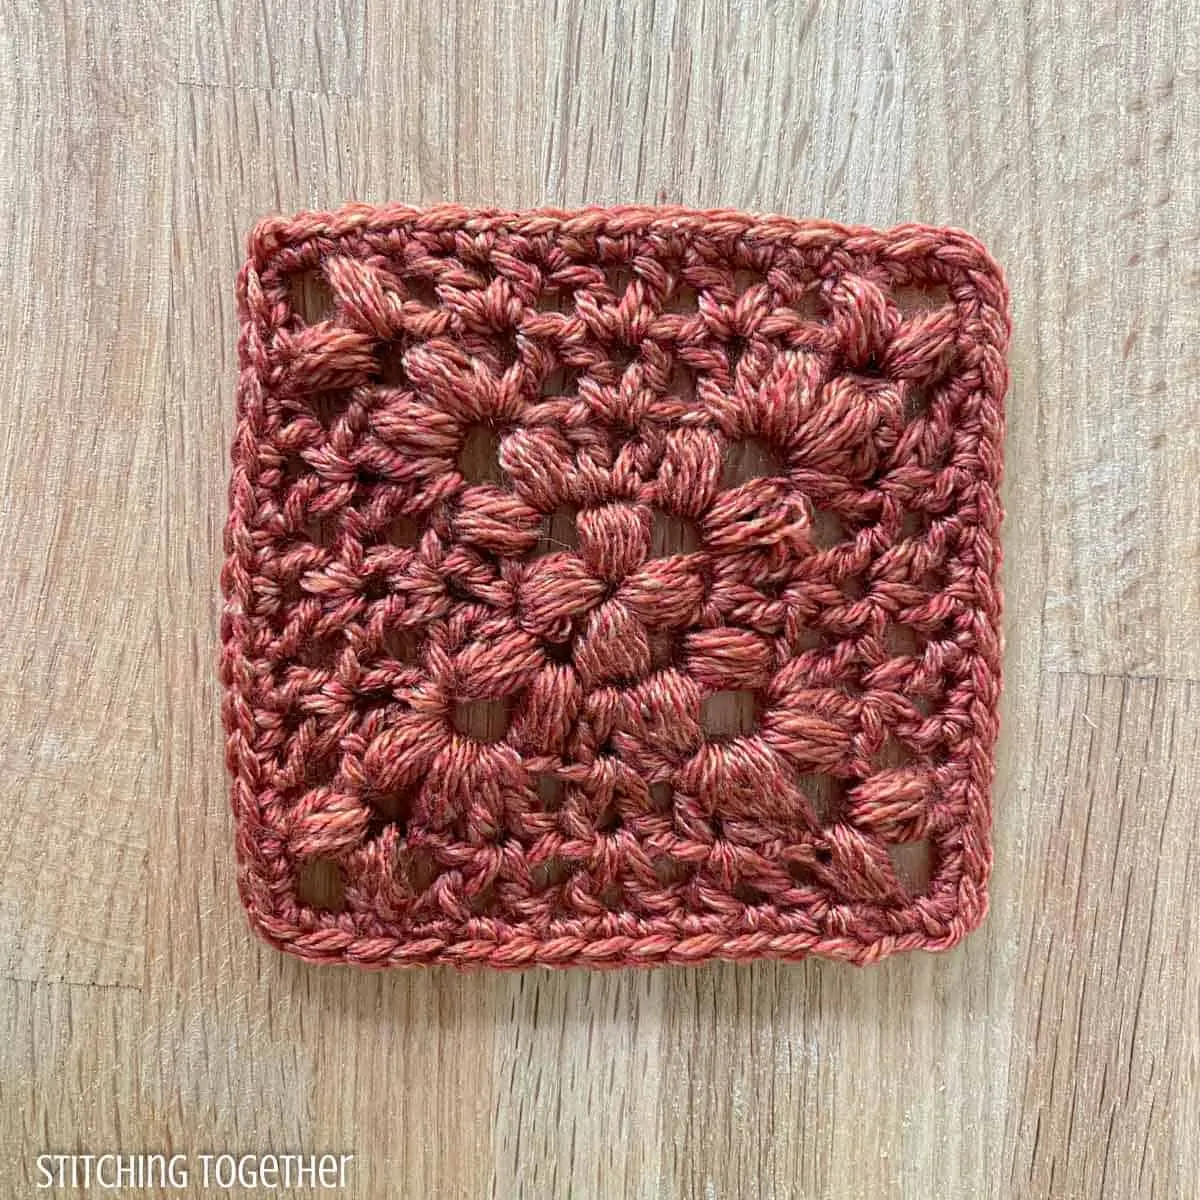 terracotta granny square crochet with open stitches